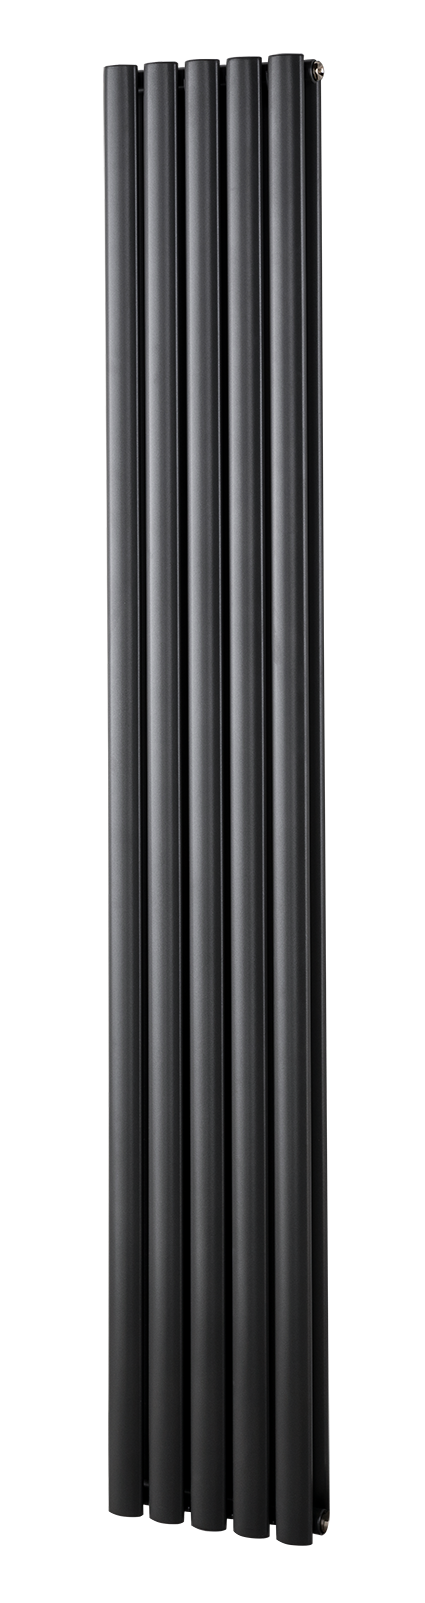 Oval tube double radiator